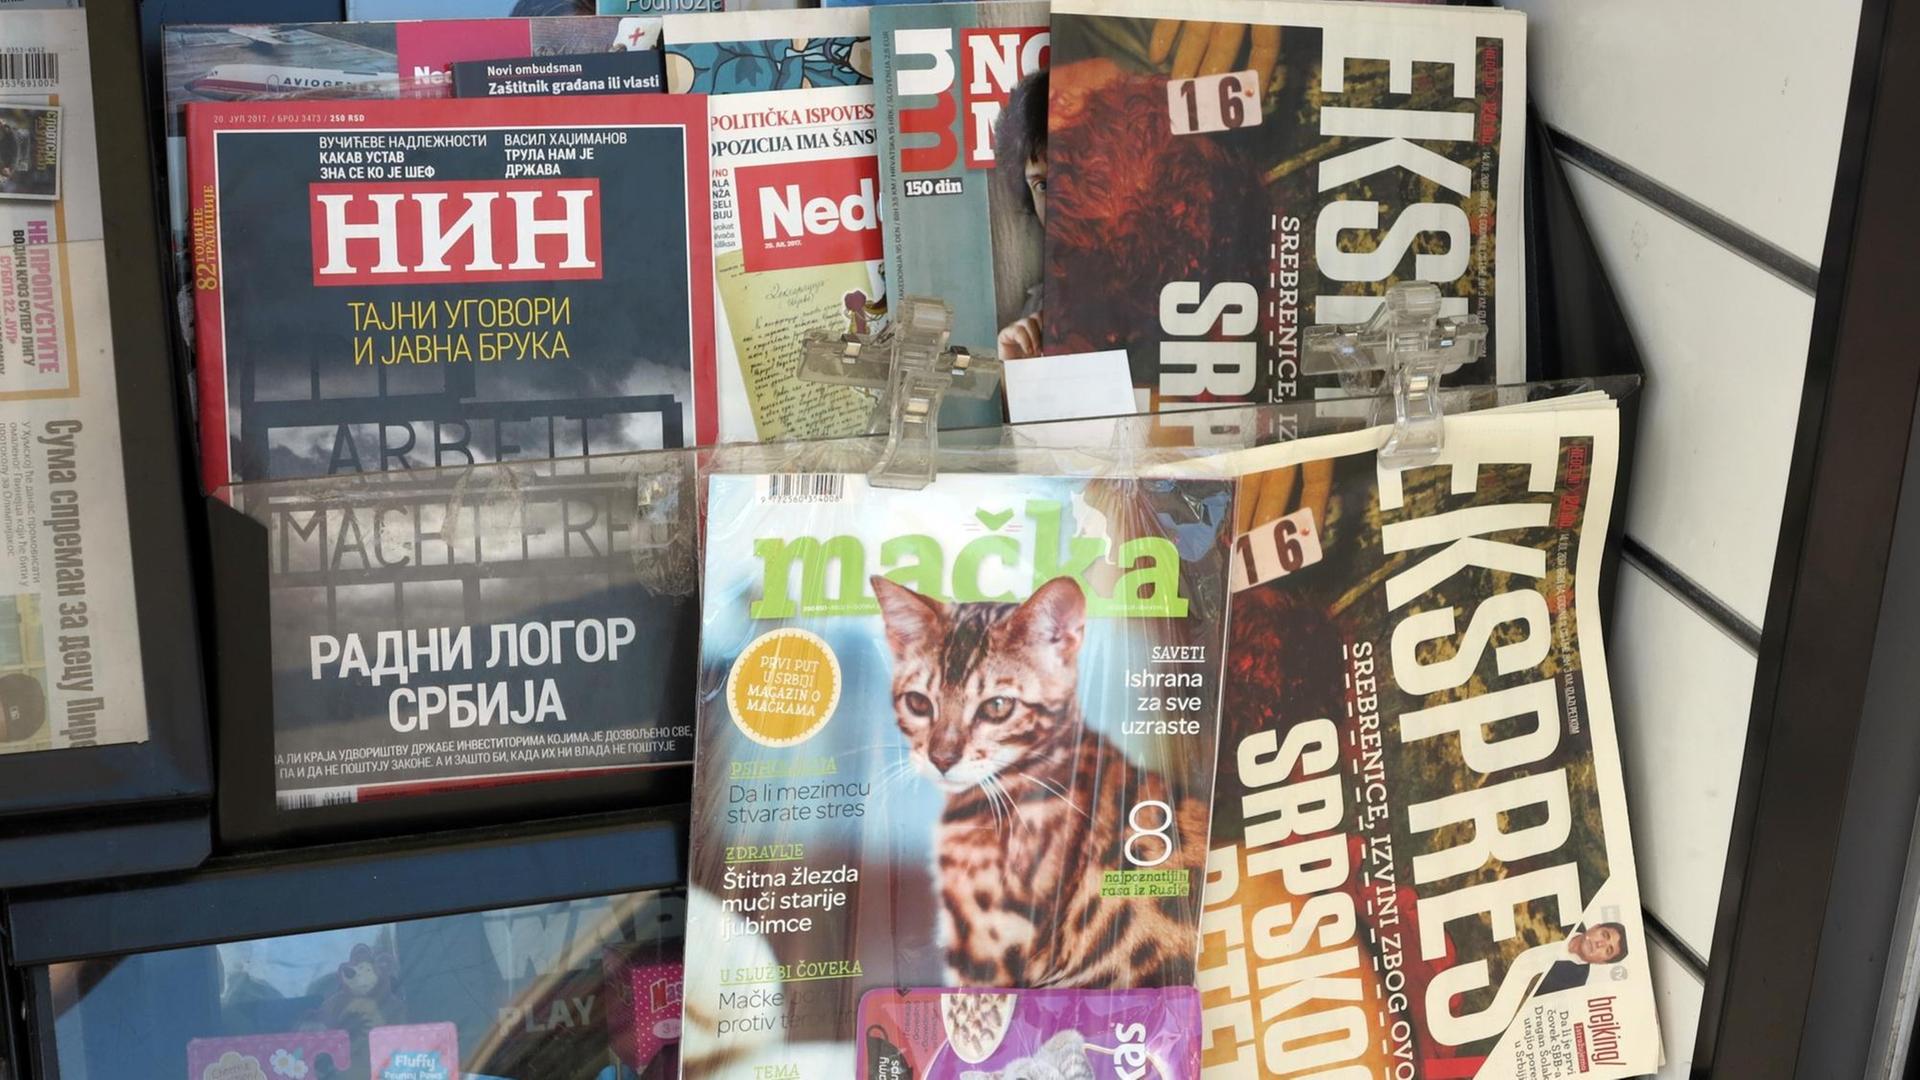 Zeitschriften an einem Kiosk, darunter das Nachrichtenmagazin NIN mit dem nationalsozialistischen KZ-Motto "Arbeit macht frei" auf dem Titelblatt